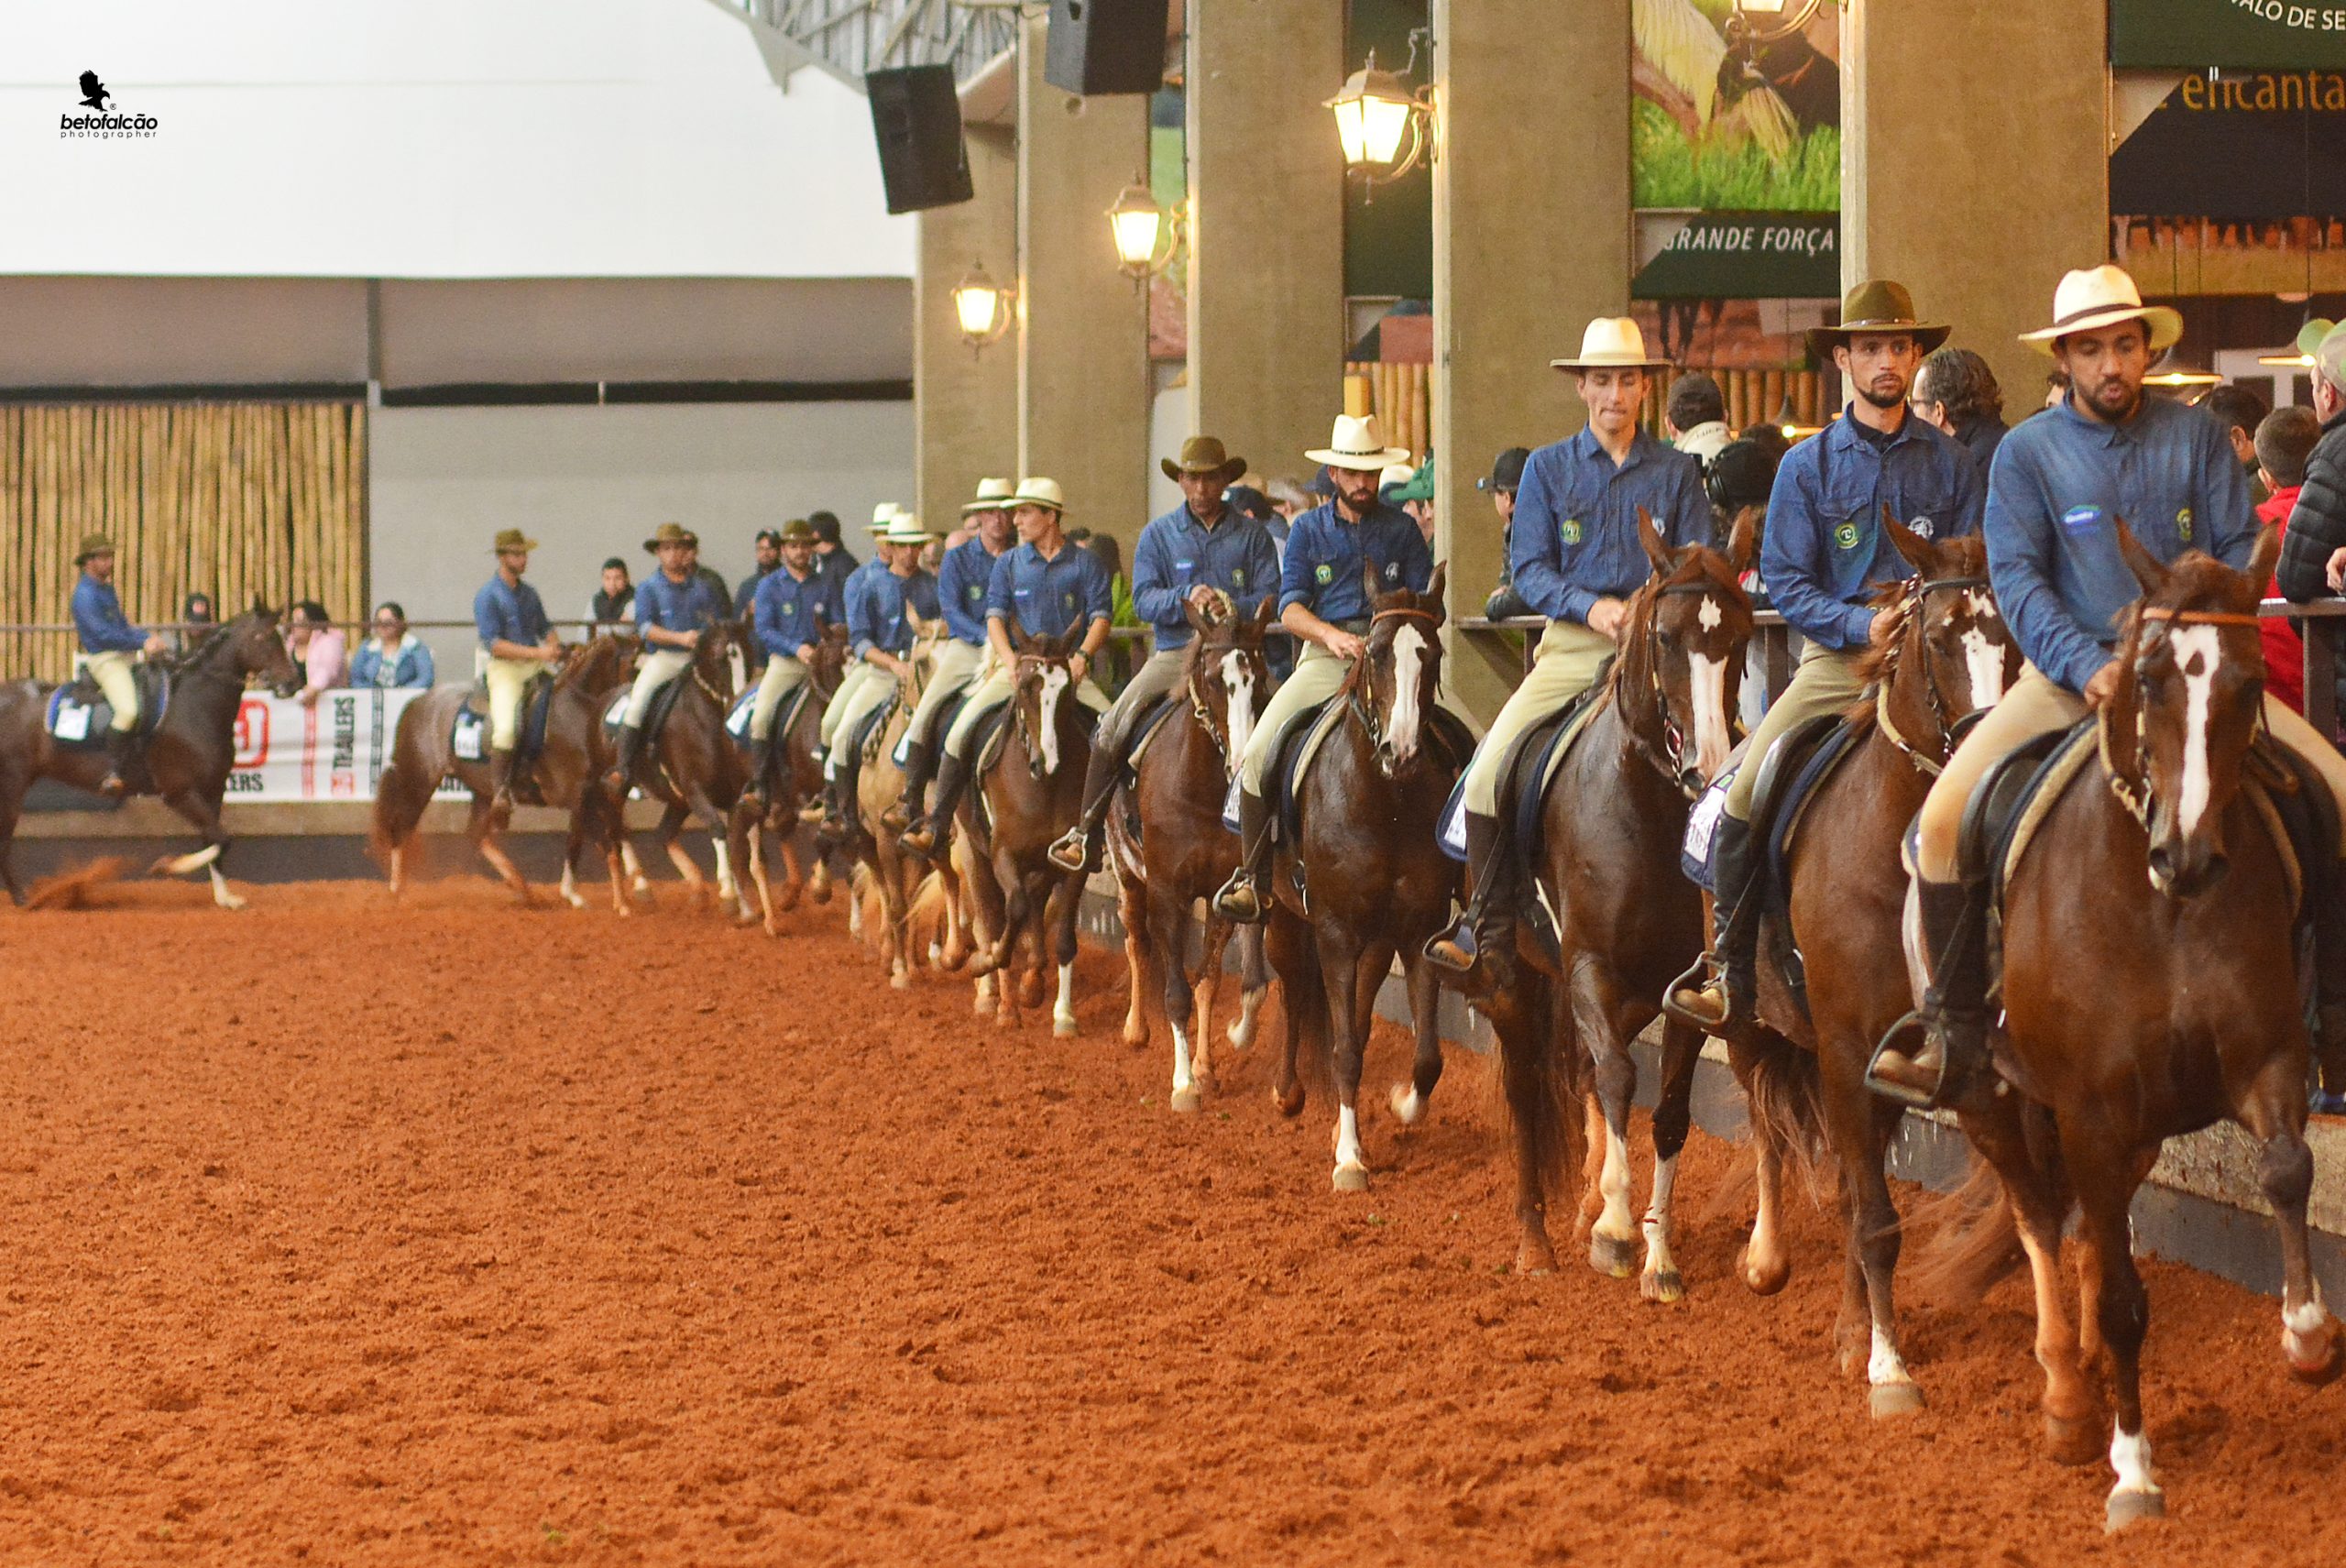 45ª Exposição Nacional do Cavalo Mangalarga começa neste feriado no Centro Hípico de Tatuí